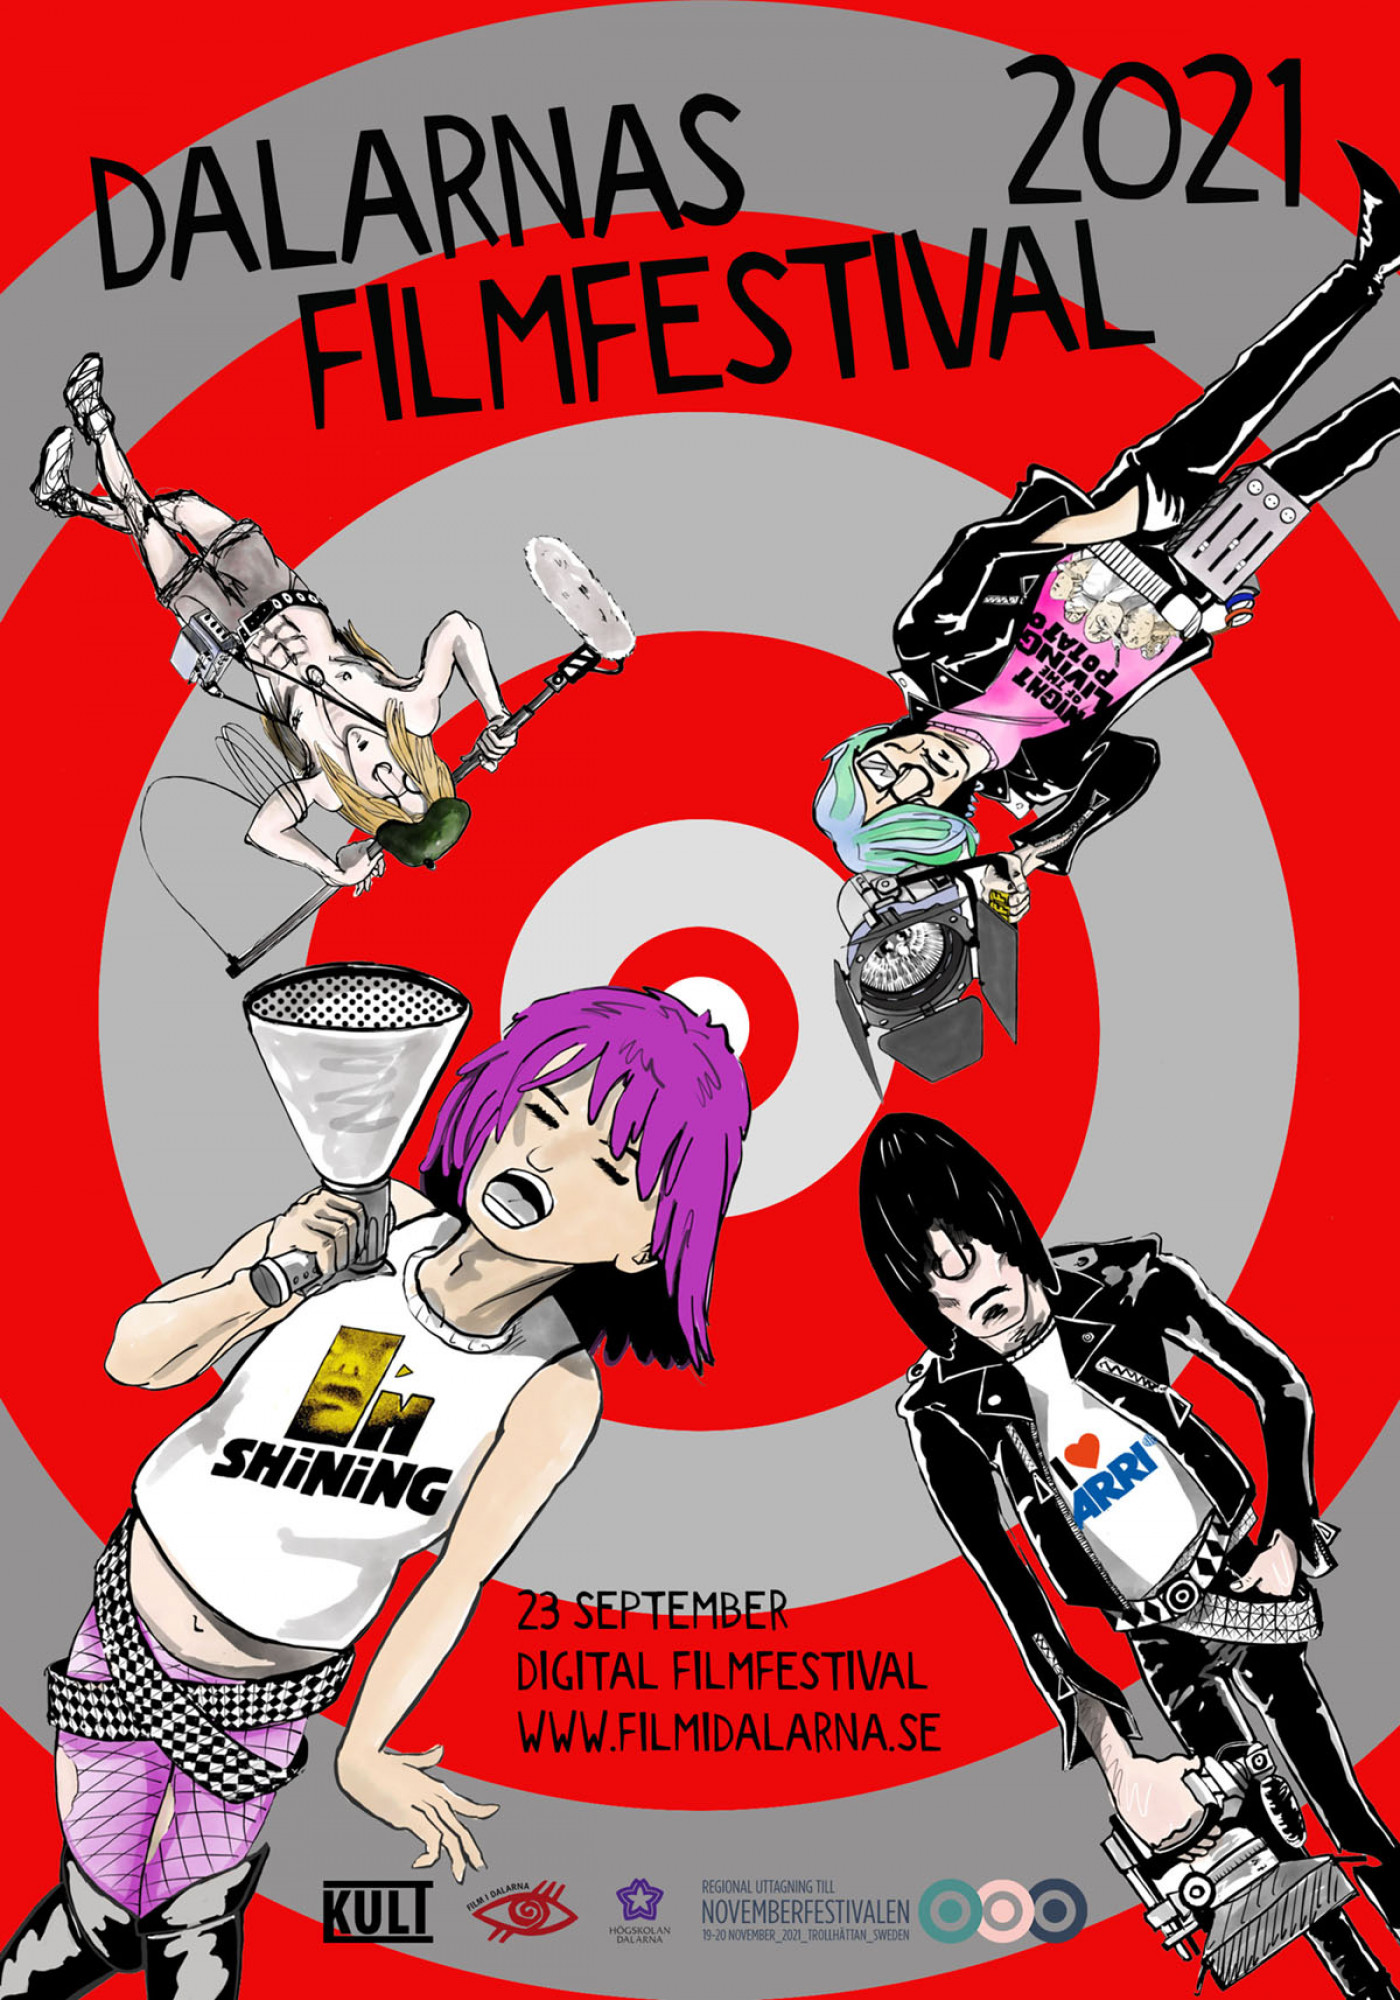 Affisch för Dalarnas filmfestival med datumet den 23 septmber i fokus